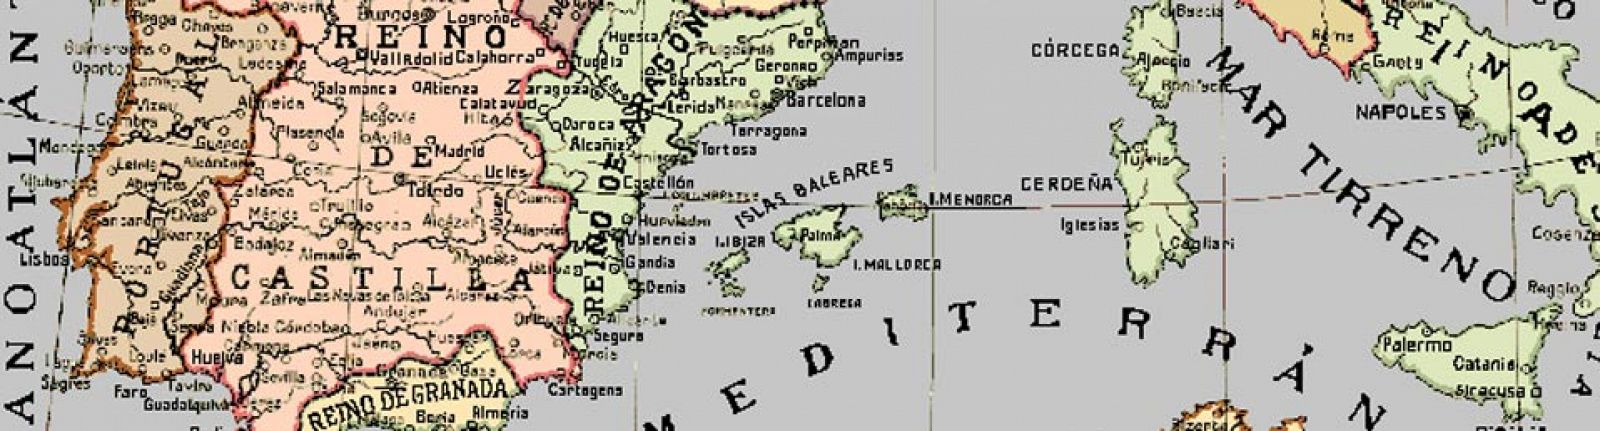 Mapa medieval de España